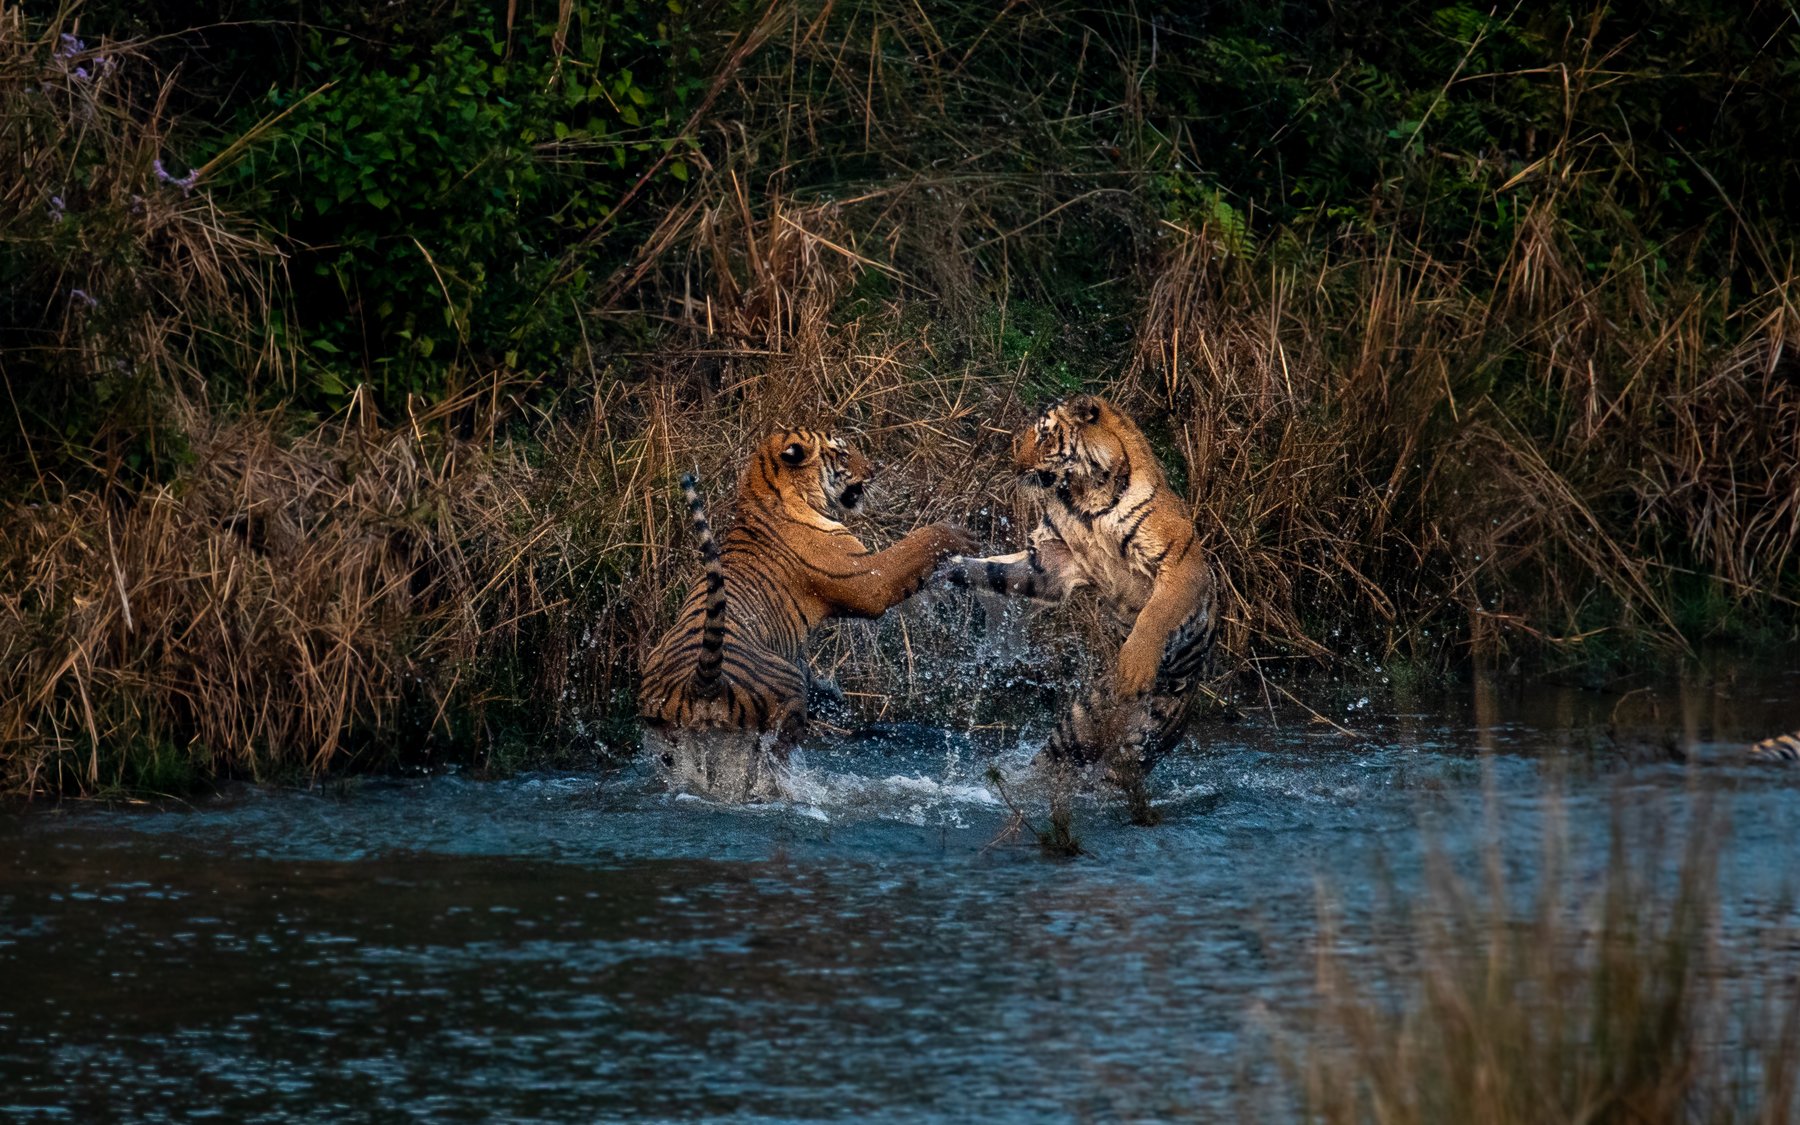 tiger tigers tigress subadult cubs juvenile corbett india playing fighting playfight, Nabarun Majumdar